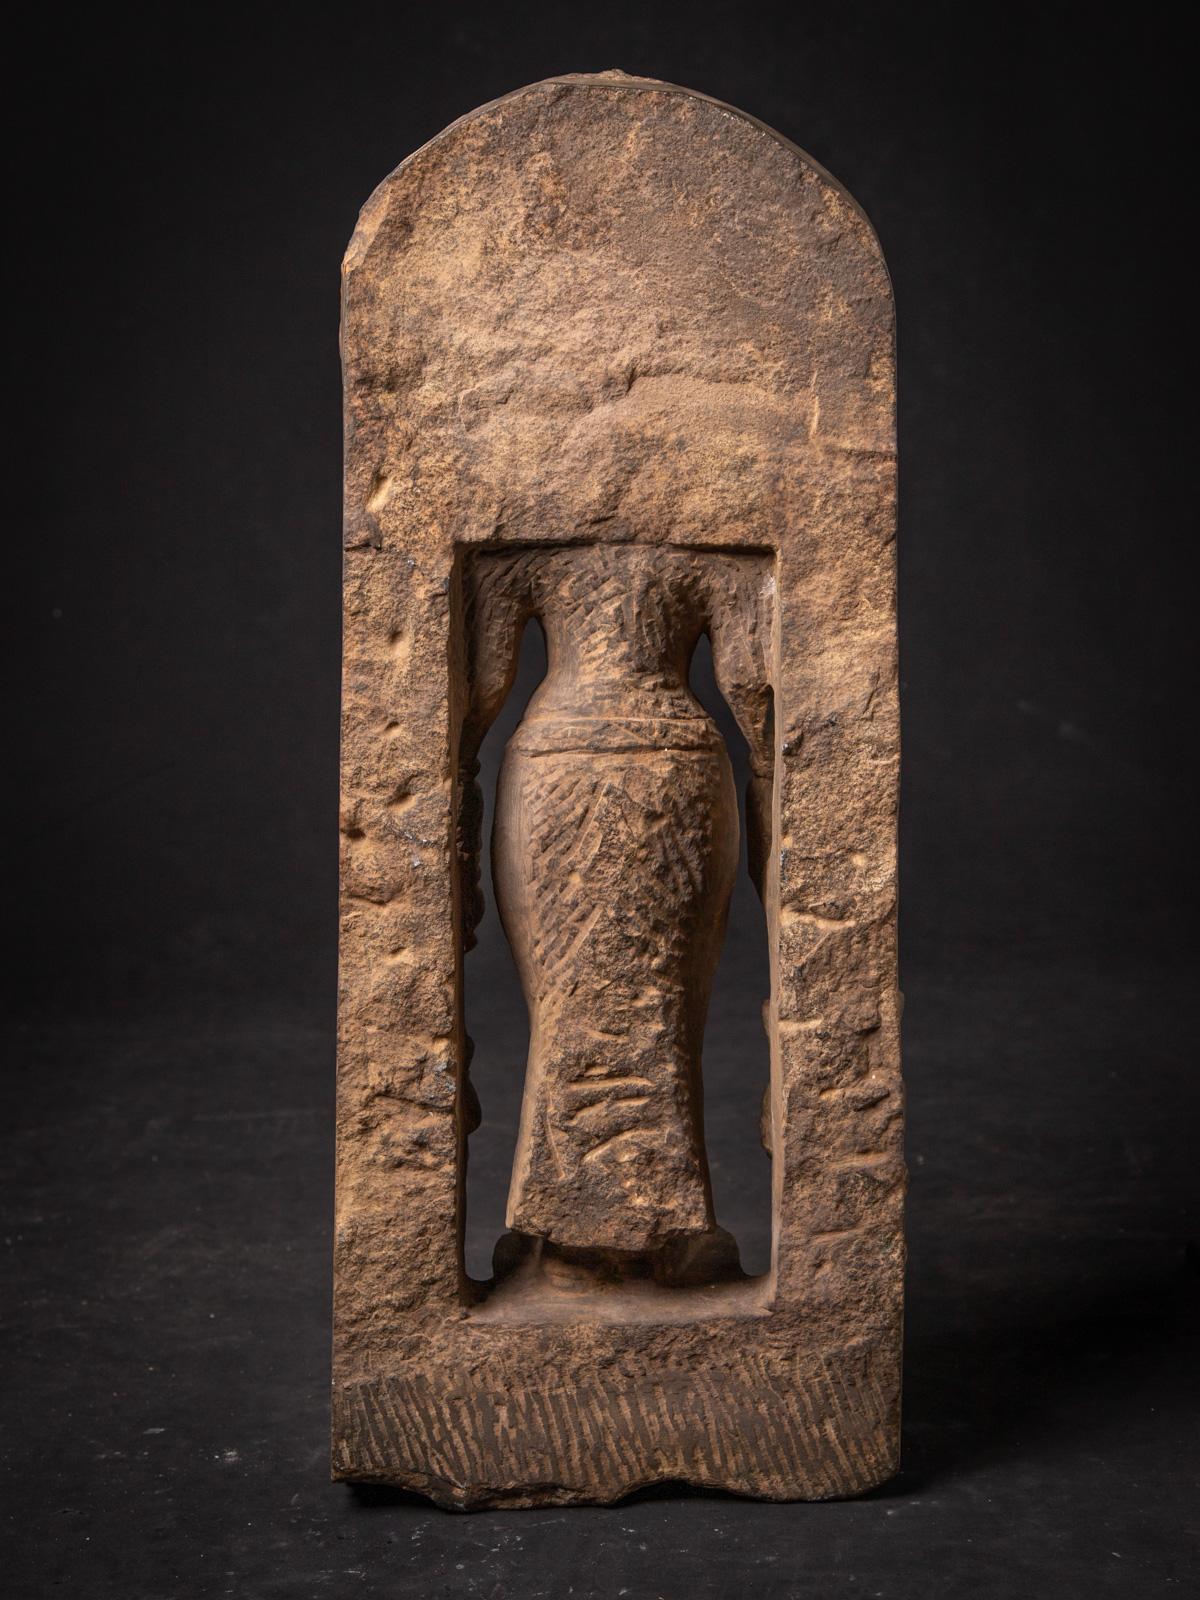 Diese Sandsteinstatue von Saraswati, begleitet von Ganesha und Kartikeya, ist ein bemerkenswertes Stück indischer religiöser Kunst. Die aus Sandstein gefertigte Statue hat eine beeindruckende Höhe von 88,5 cm und misst 28 cm in der Breite und 20 cm